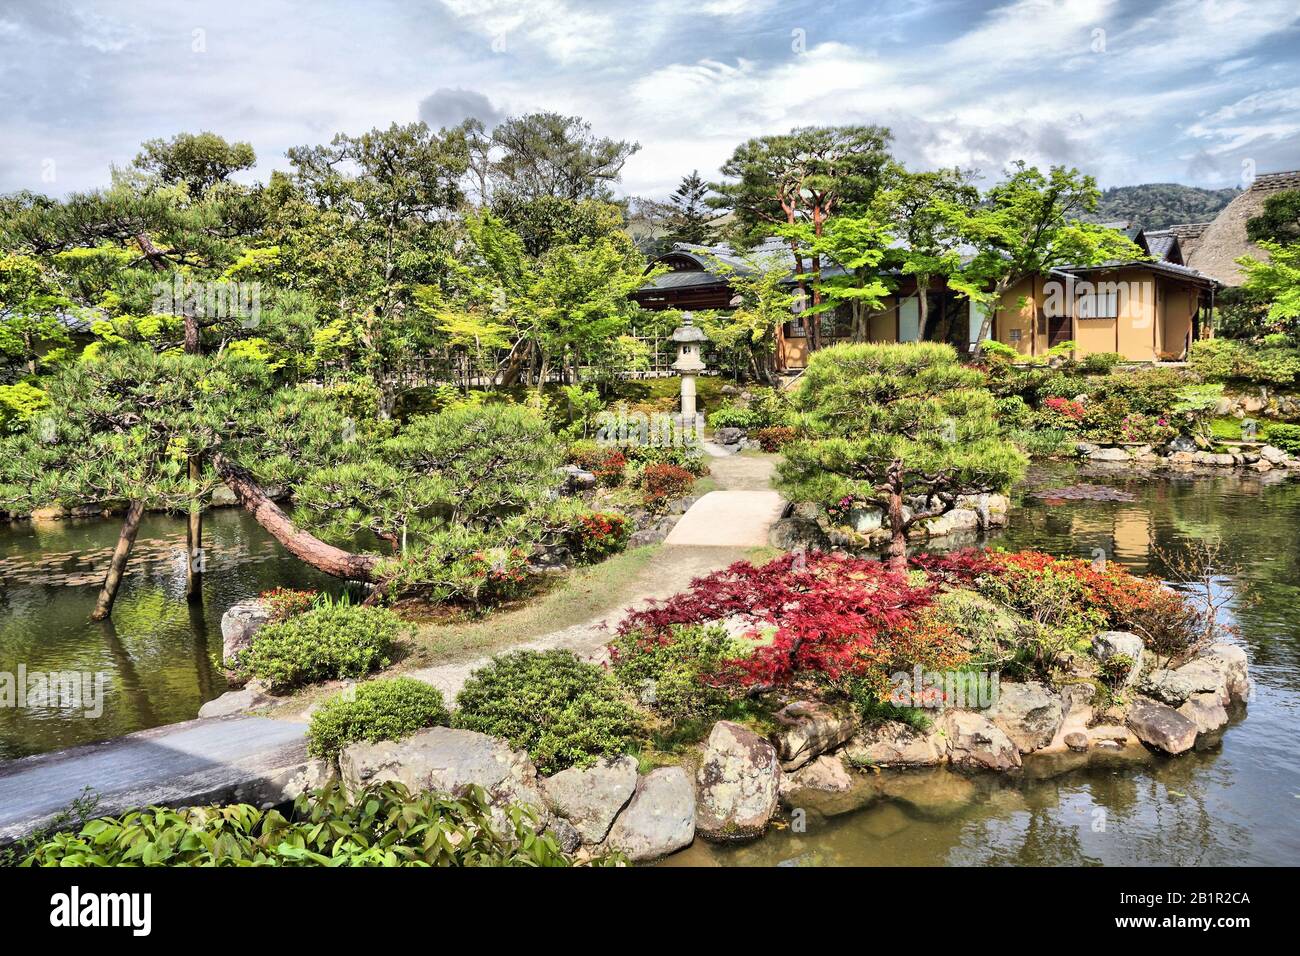 Nara, Japan - Isuien Garden. Japanese style garden. Stock Photo